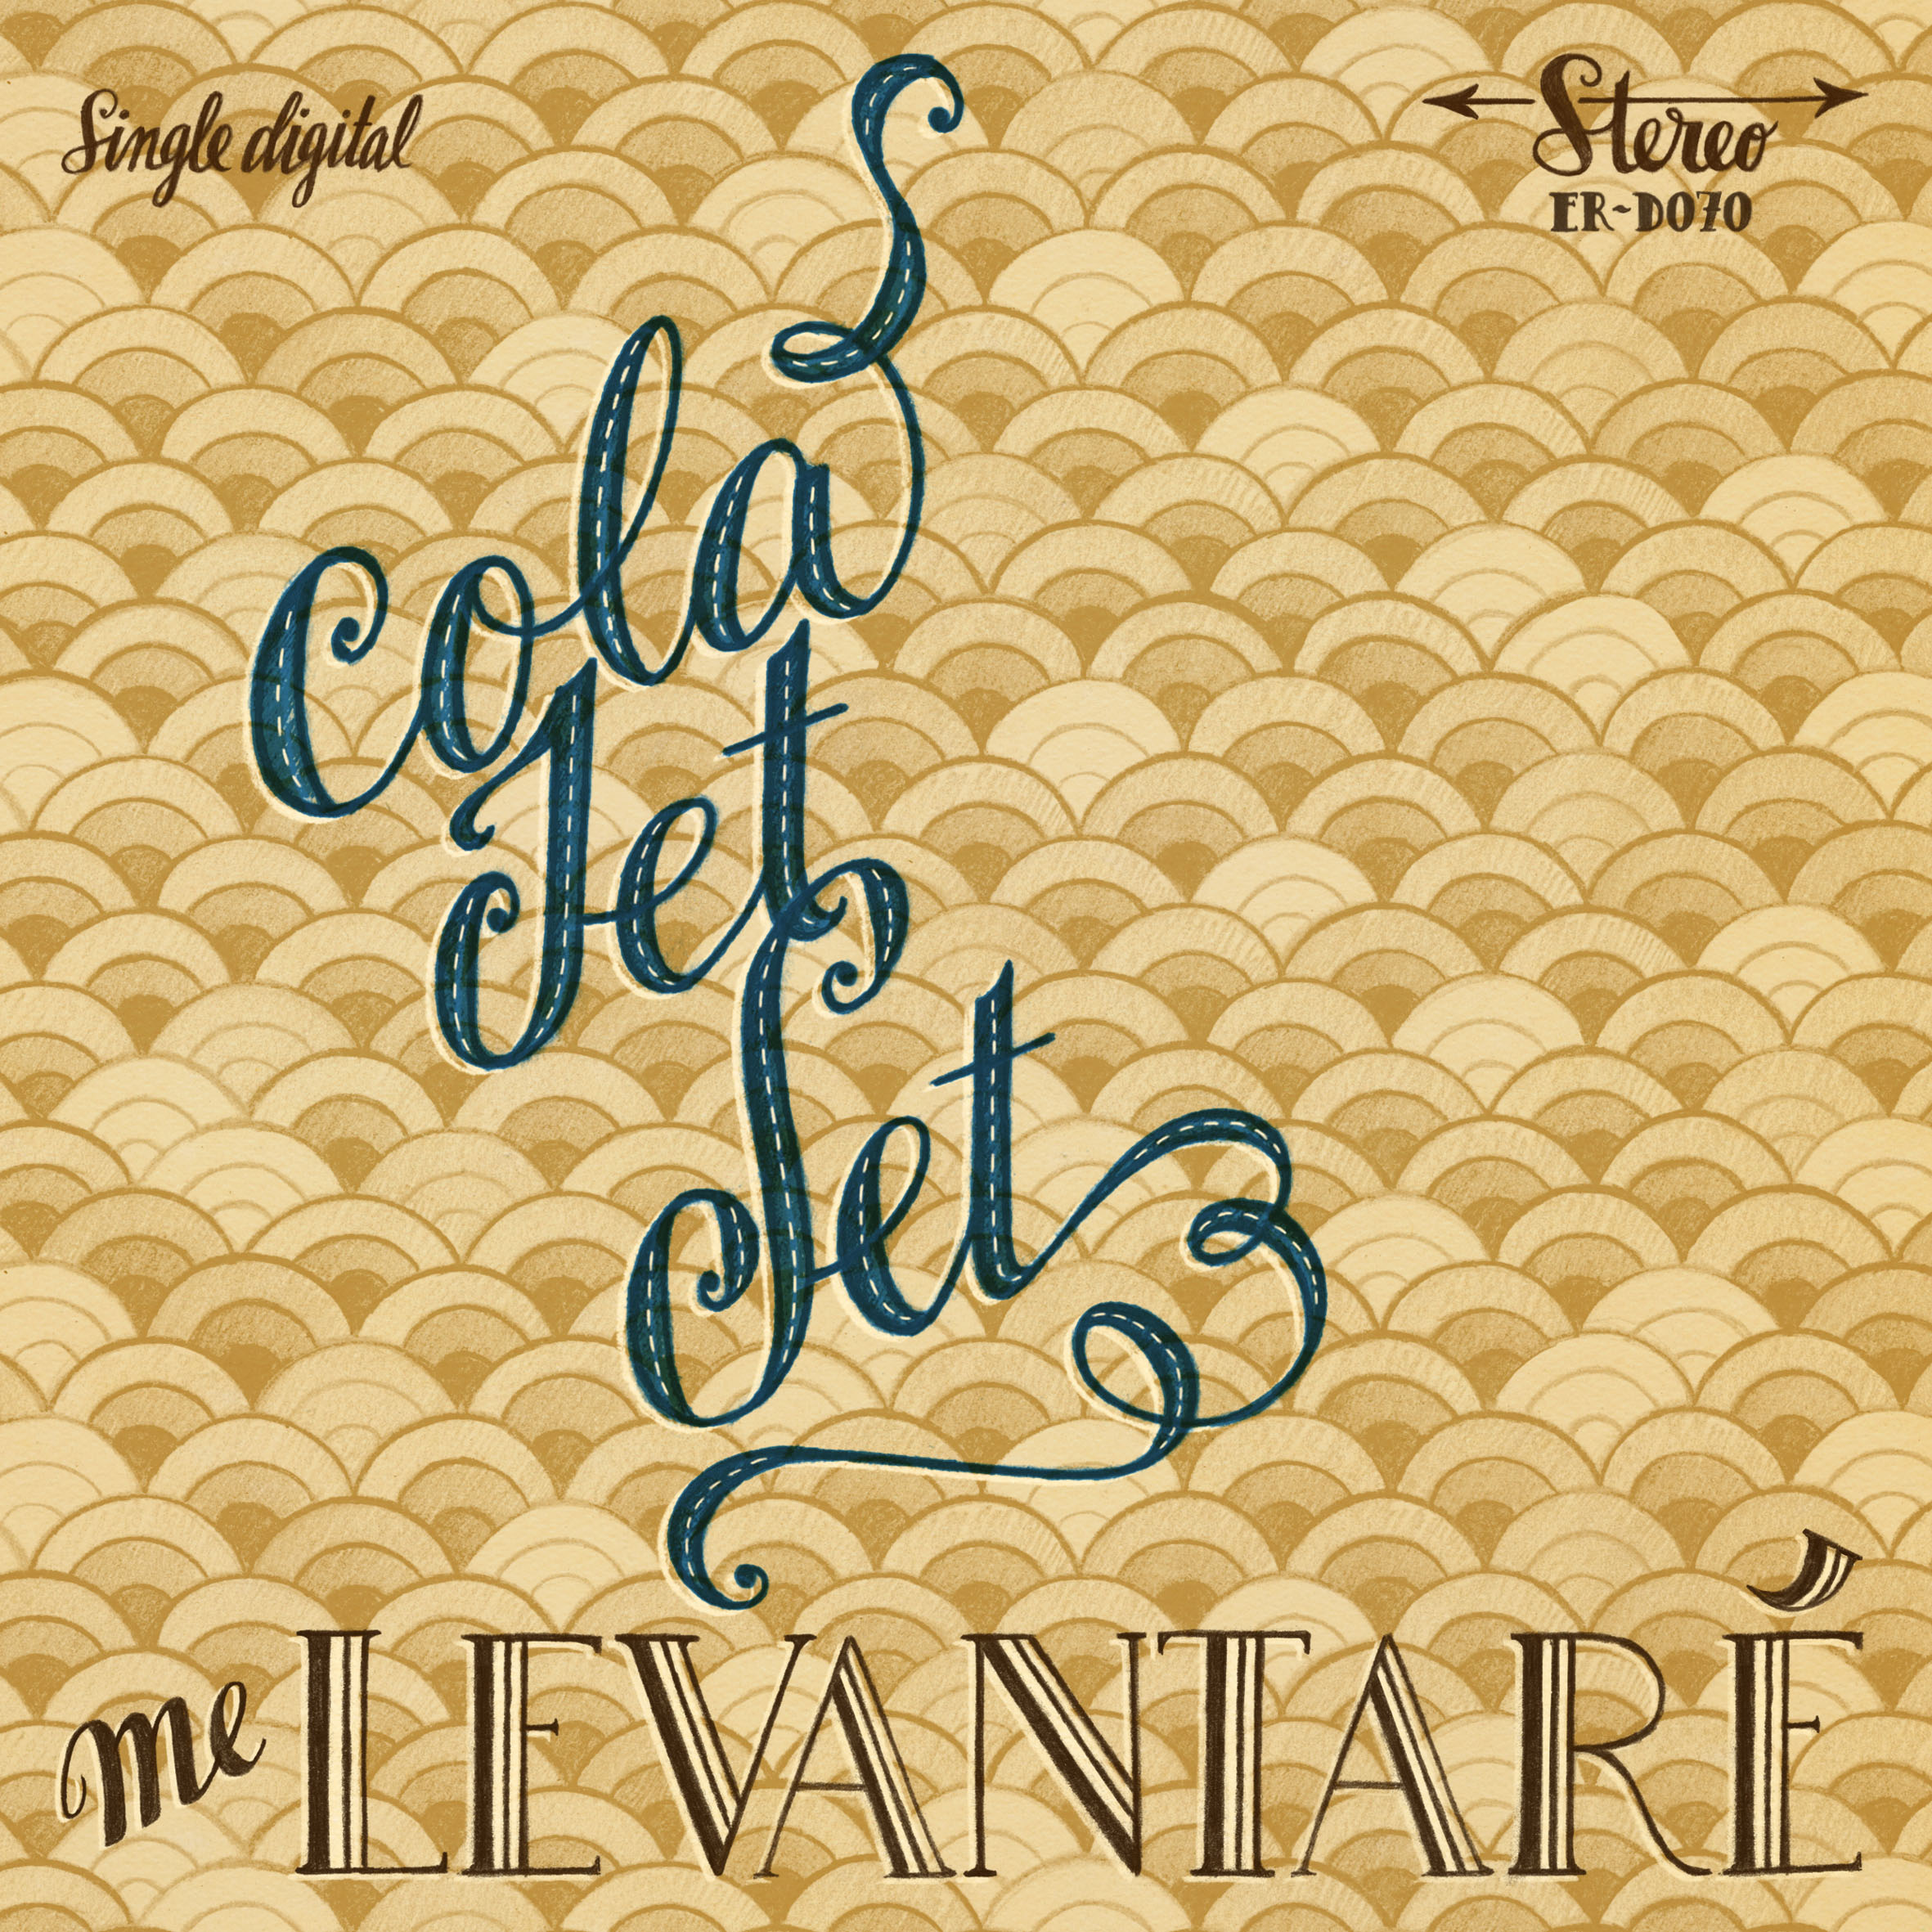 Cola Jet Set "Me Levantaré" Digital Single